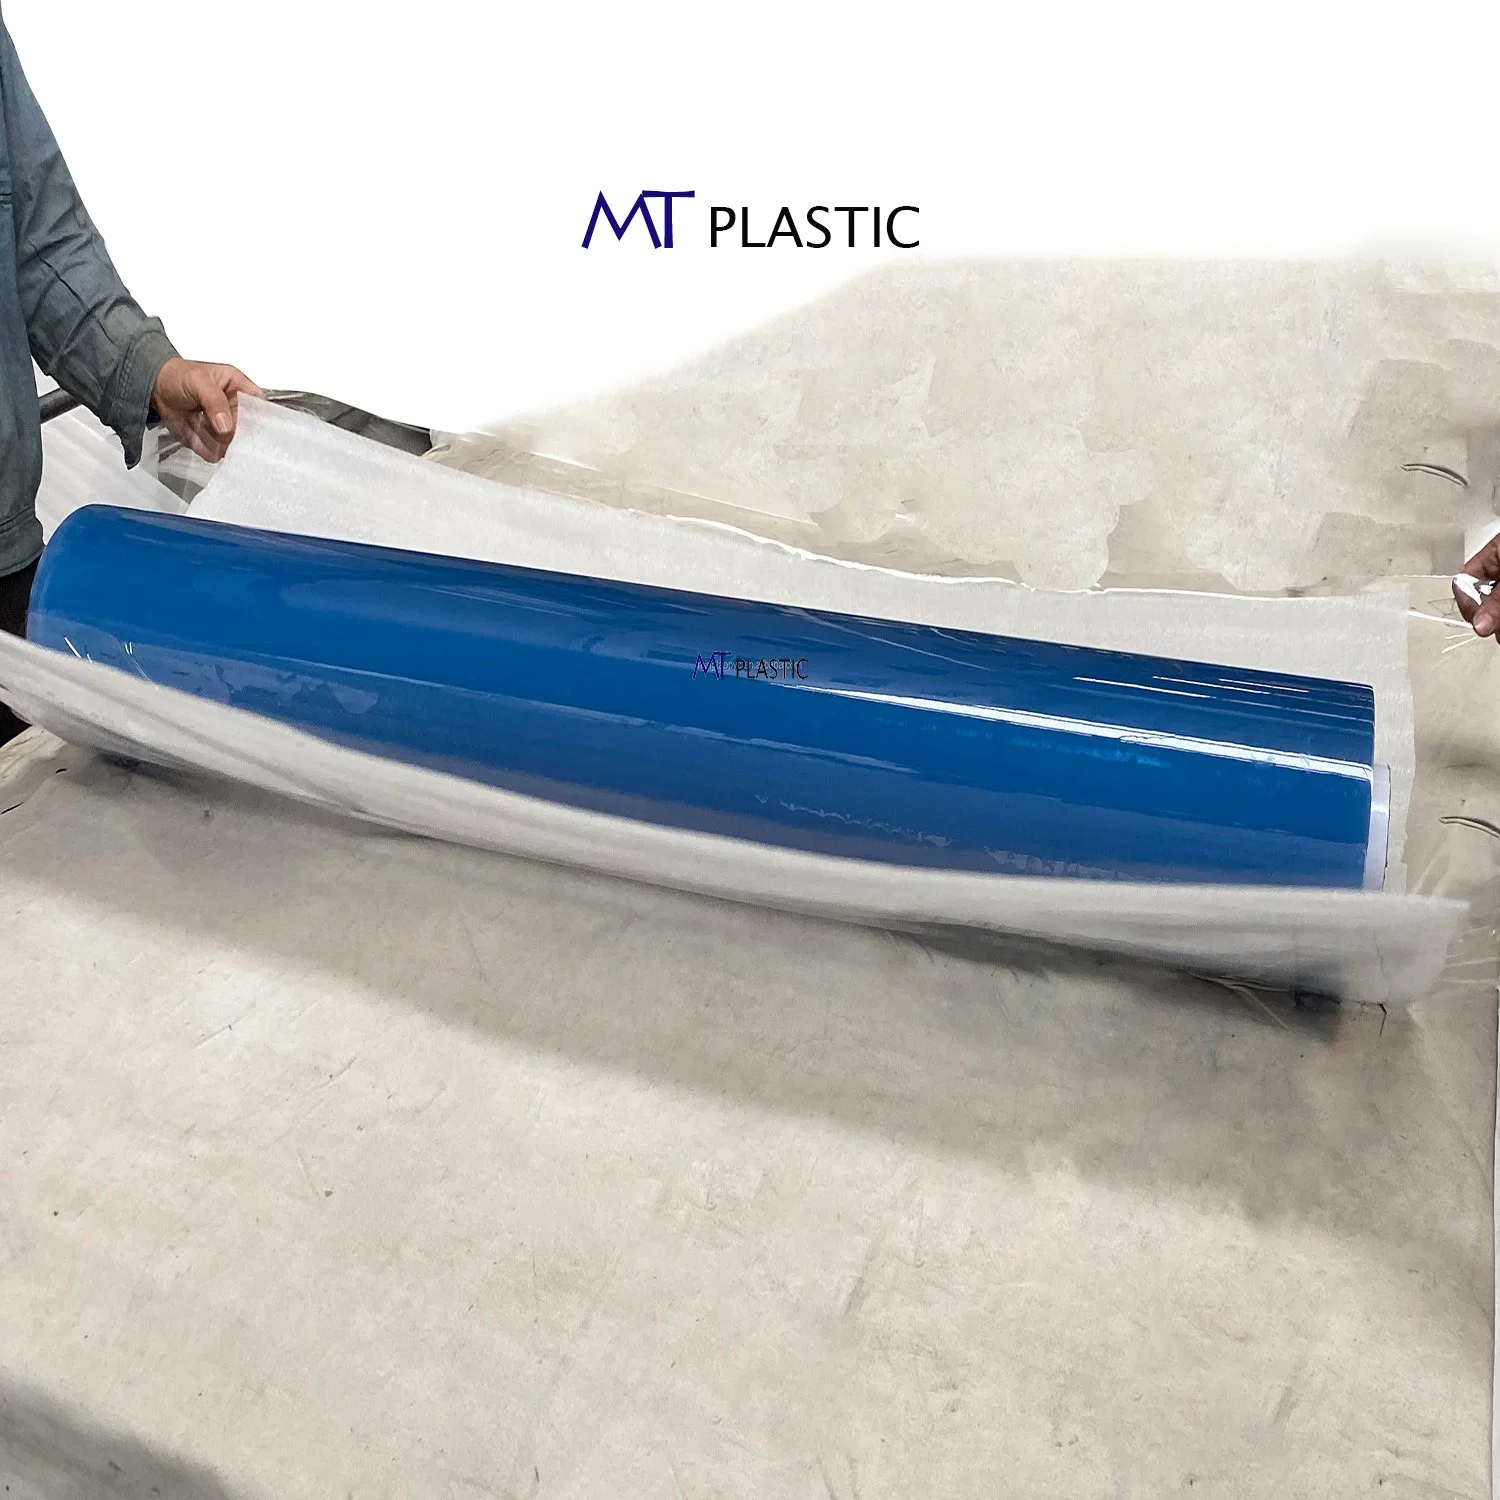 Feuille acrylique souple et flexible bleue en PVC semi-transparente pour matelas et meubles.